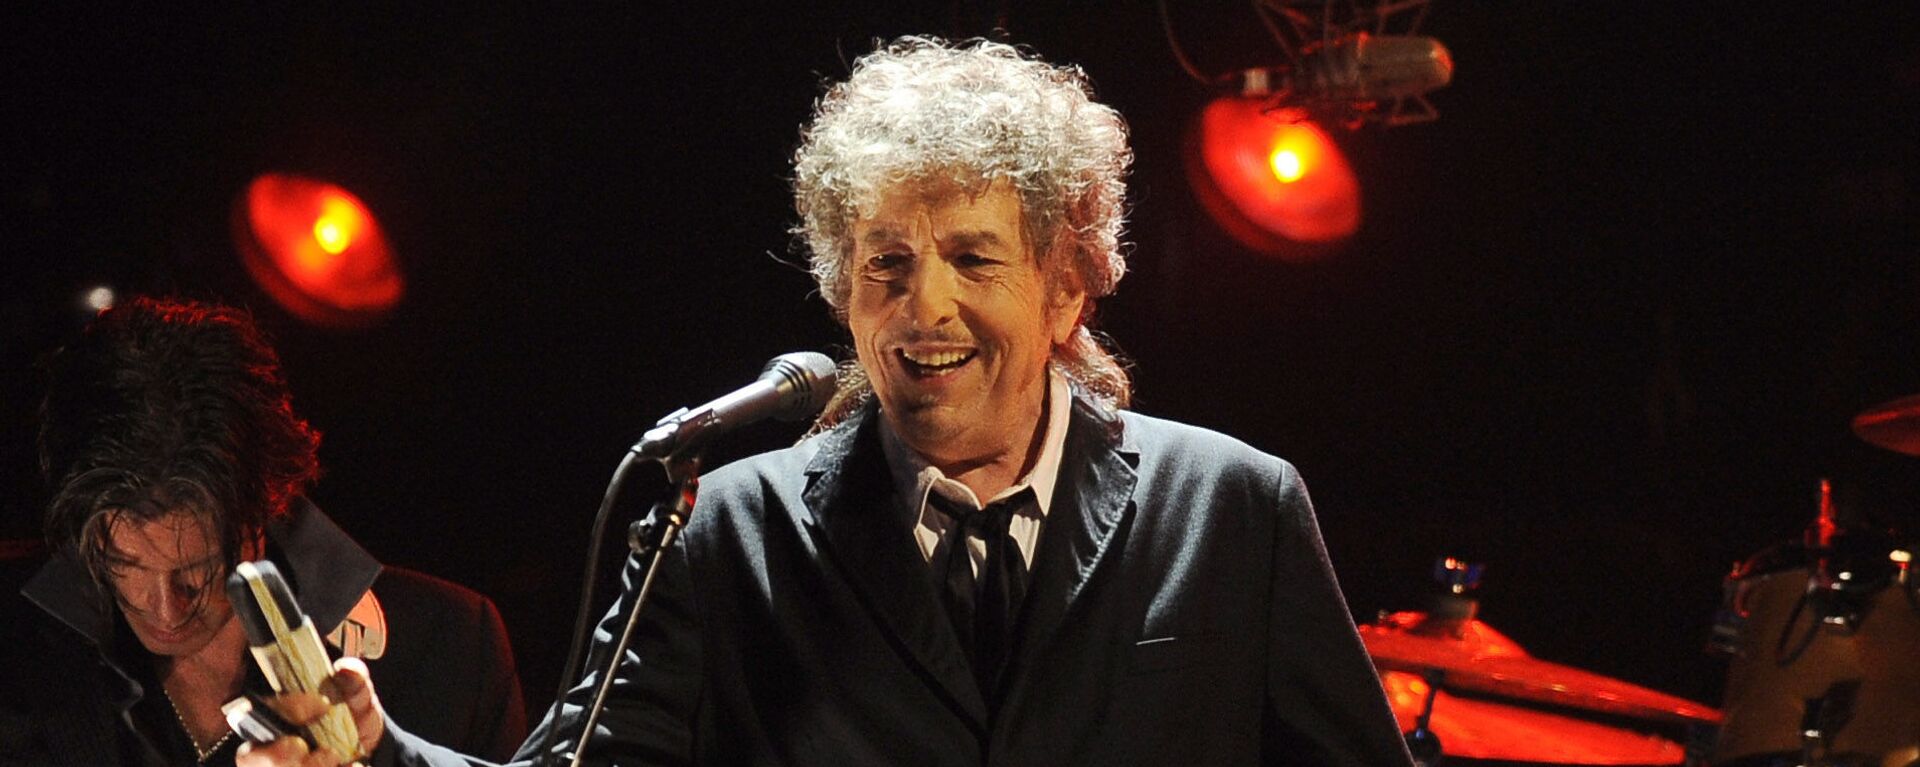 Боб Дилан выступает в Лос-Анджелесе - Sputnik Mundo, 1920, 24.05.2021